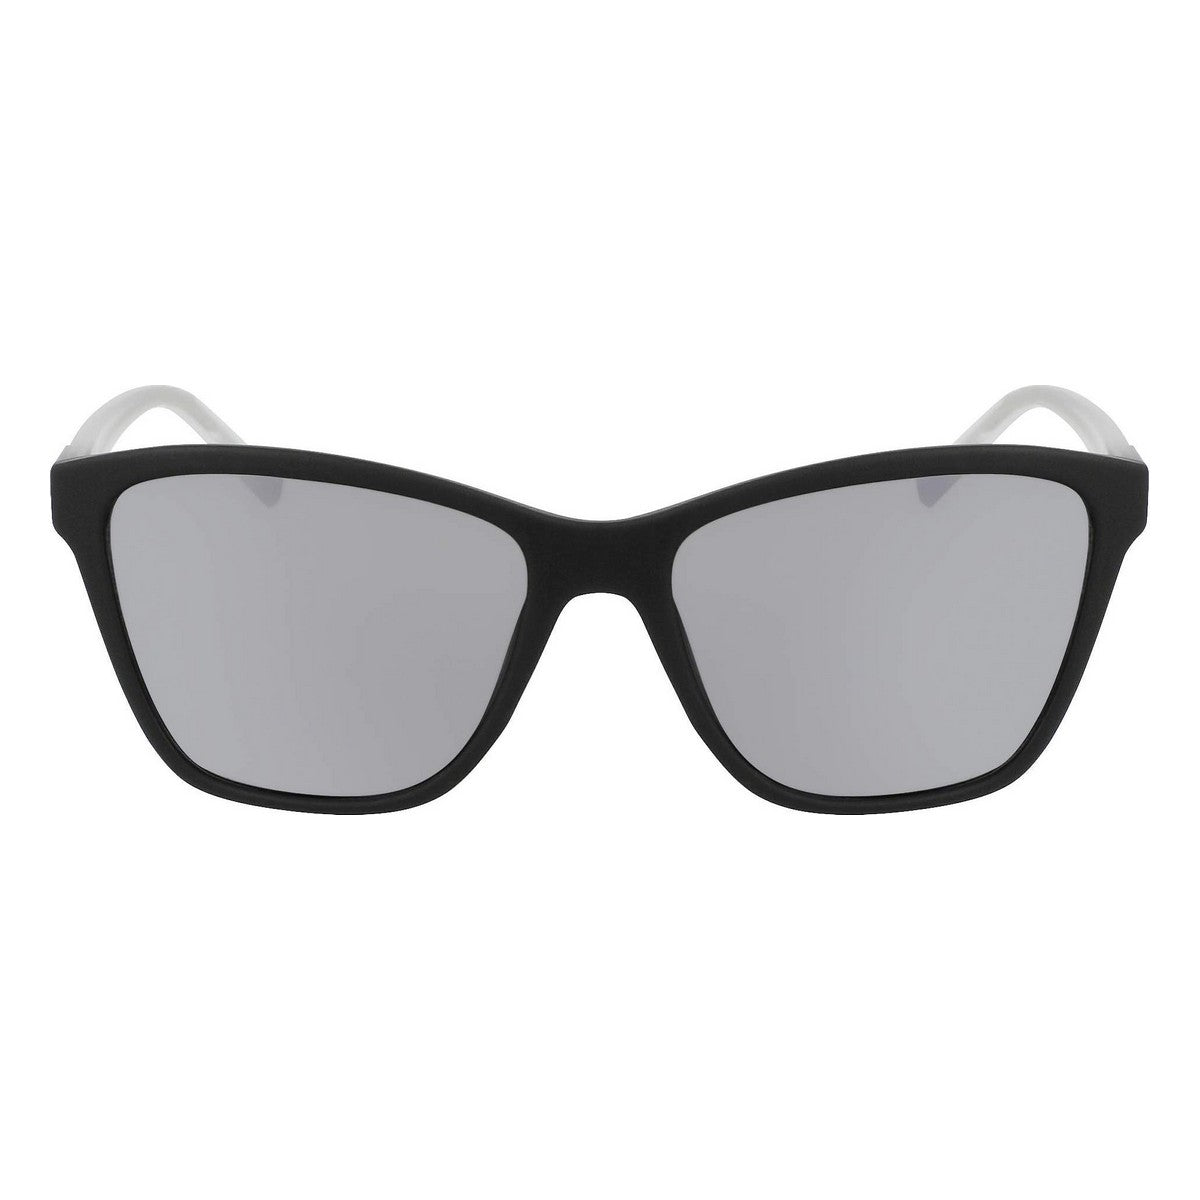 Kaufe Damensonnenbrille DKNY DK531S-001 ø 55 mm bei AWK Flagship um € 57.00